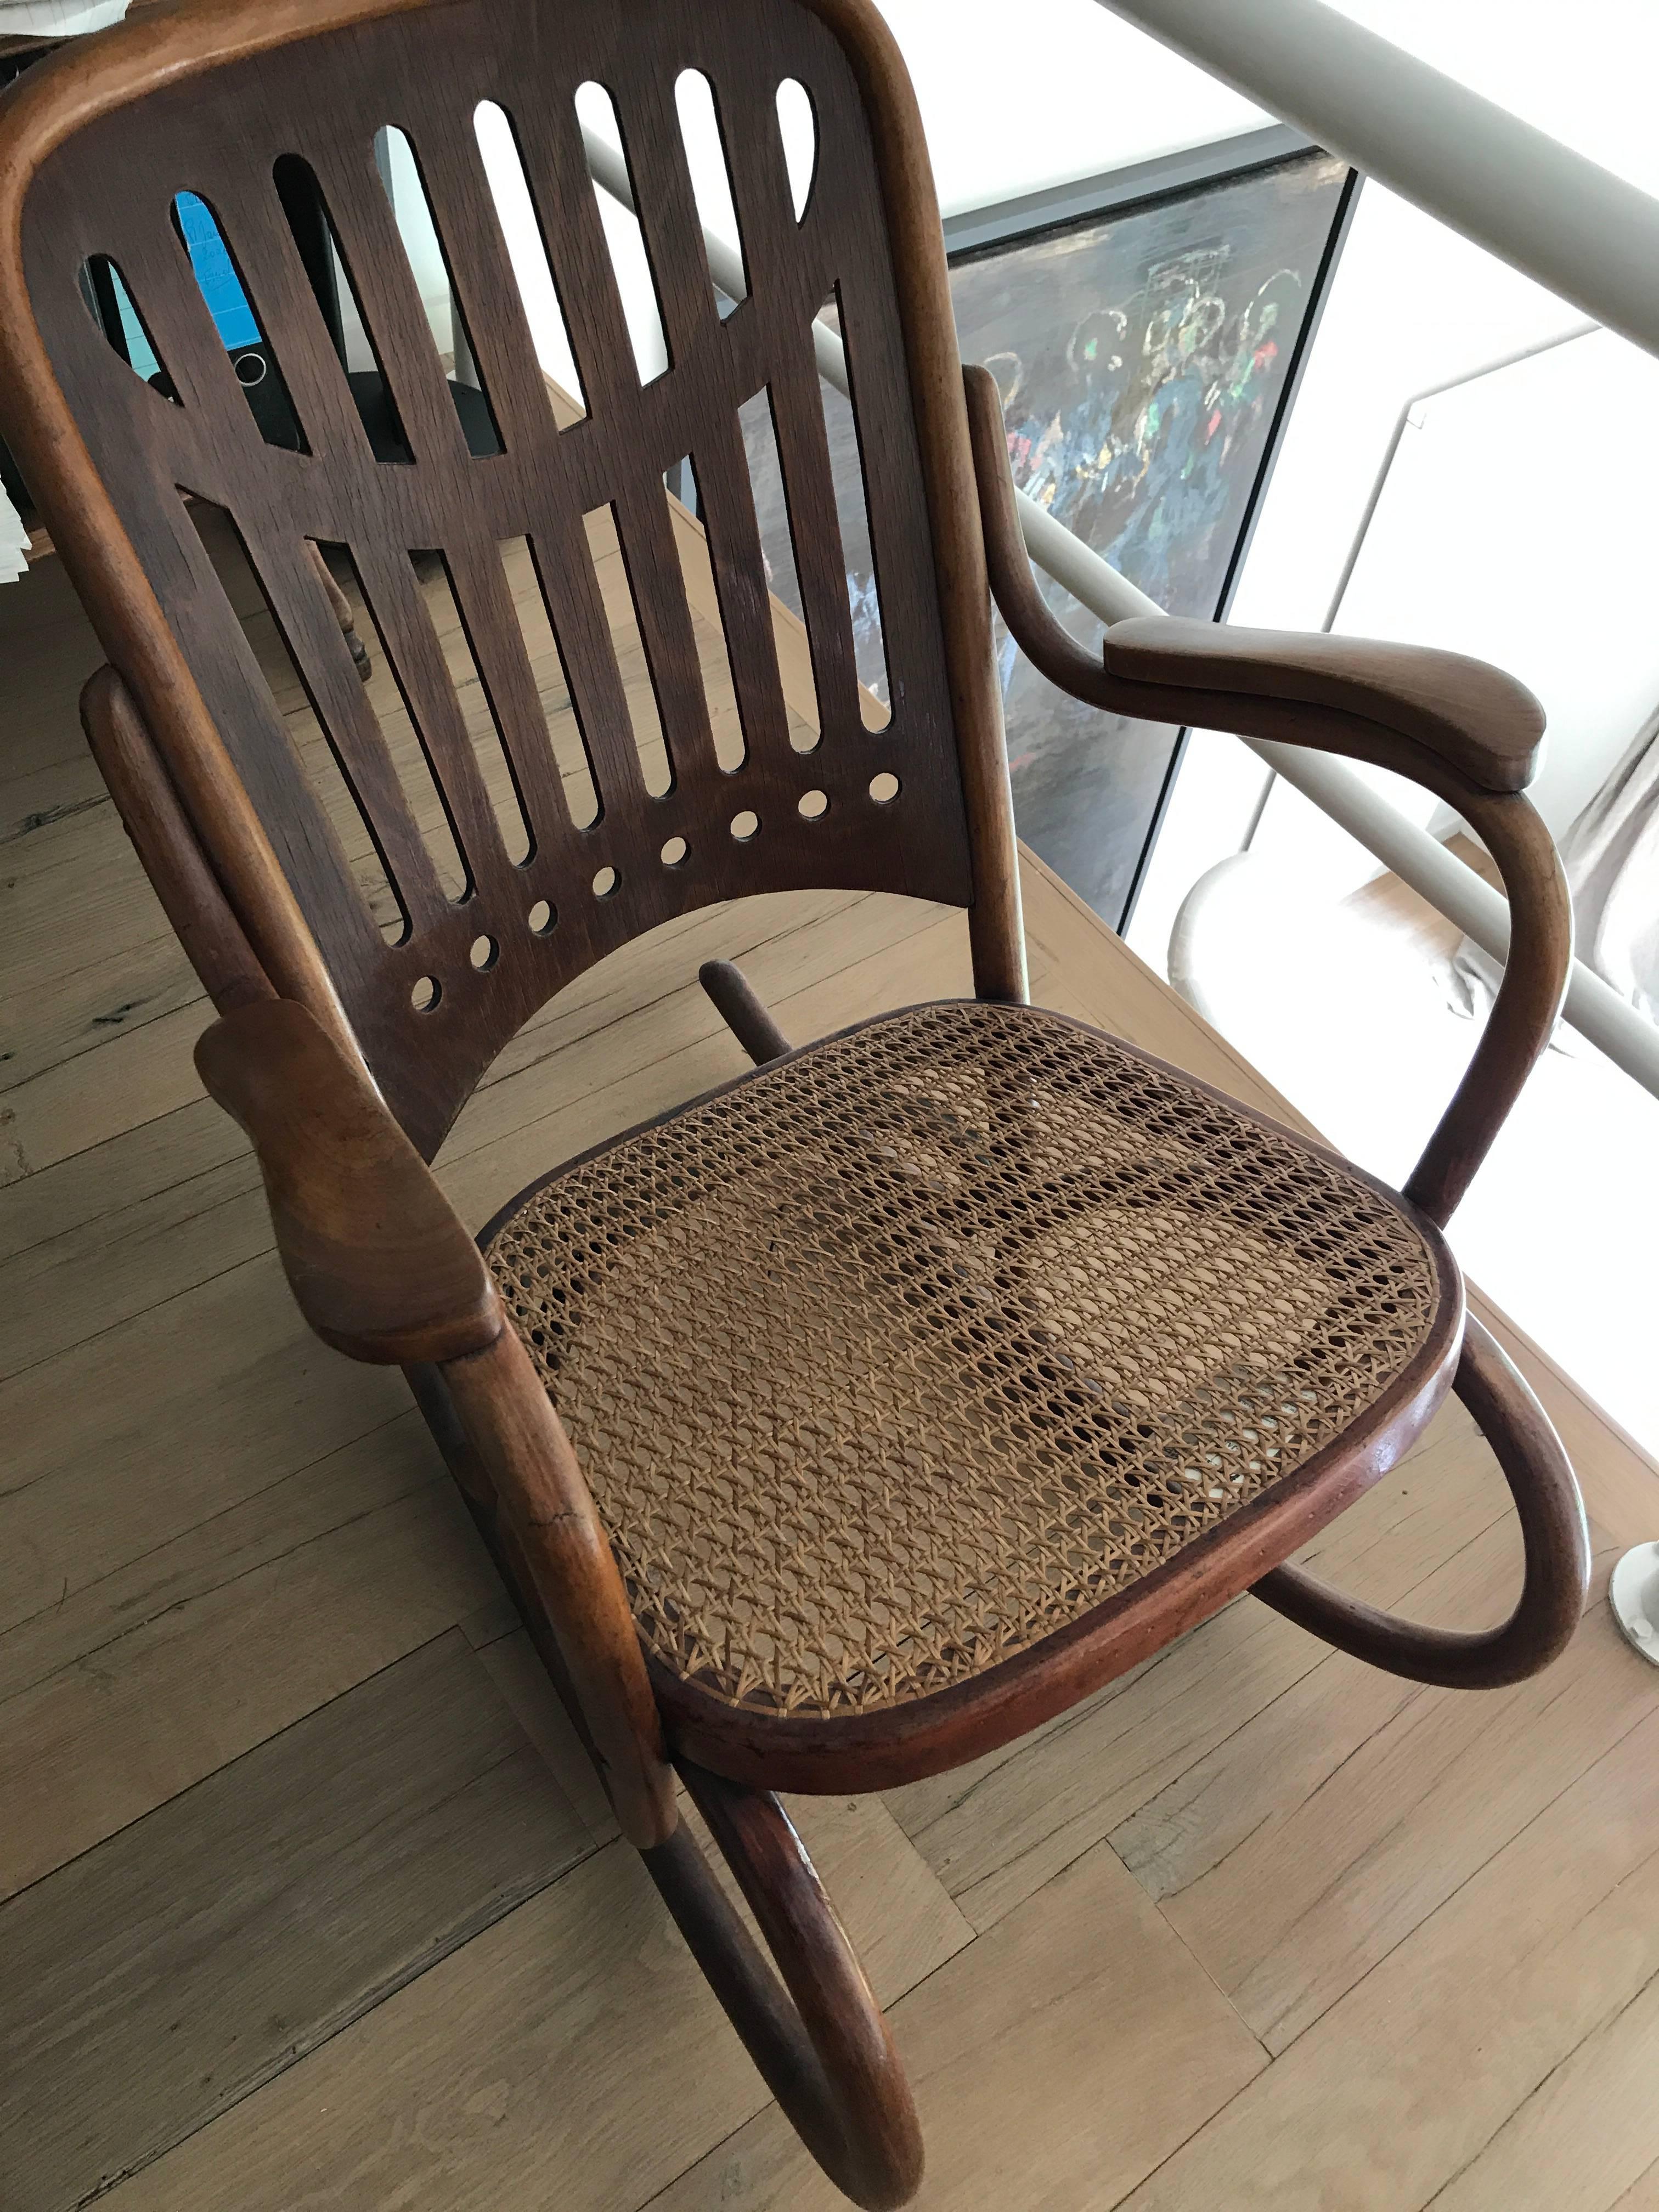 Chaise à bascule en bois courbé Thonet originale en jugendstill,
vers 1910.
Dans le catalogue officiel de 1910
signé, étiqueté et tamponné
entièrement restauré.
      